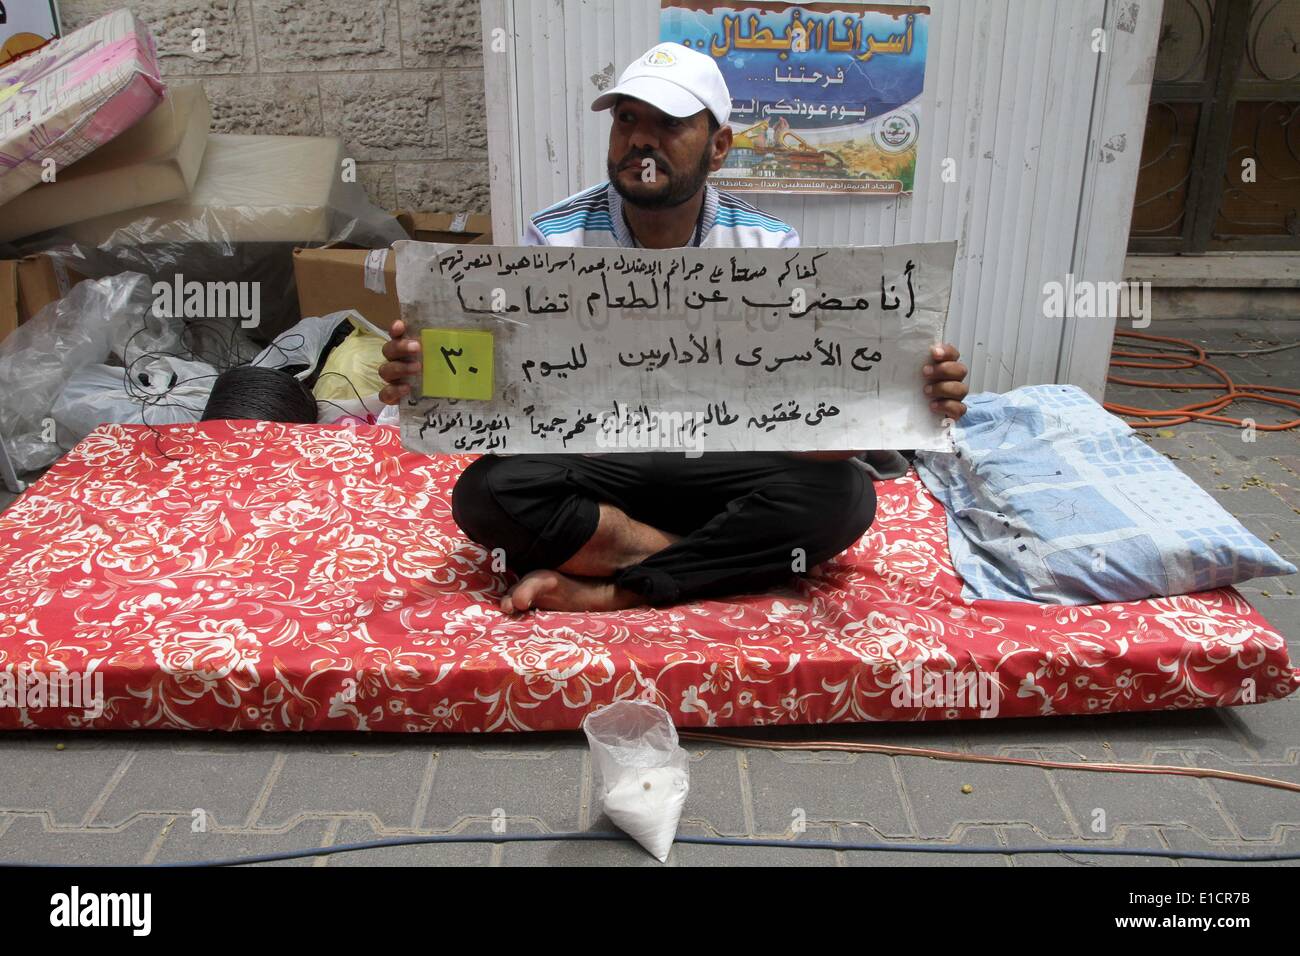 Gaza-Stadt, Gazastreifen, Palästinensische Gebiete. 31. Mai 2014. Ein palästinensischer Mann im Hungerstreik bleibt bei einem Zelt vor dem roten Kreuz Büro in Gaza-Stadt, zur Solidarität mit den palästinensischen Gefangenen, am 31. Mai 2014. Es war ungefähr 120 Palästinenser eingesperrt ohne Gerichtsverfahren in Israel auf eine offene Hungerstreik und nur Salzaufnahme, Trinkwasser, in den letzten 30 Tagen fordern ein Ende der sogenannten "Administrativhaft Credit: Mohammed Asad/APA Images/ZUMAPRESS.com/Alamy Live News Stockfoto